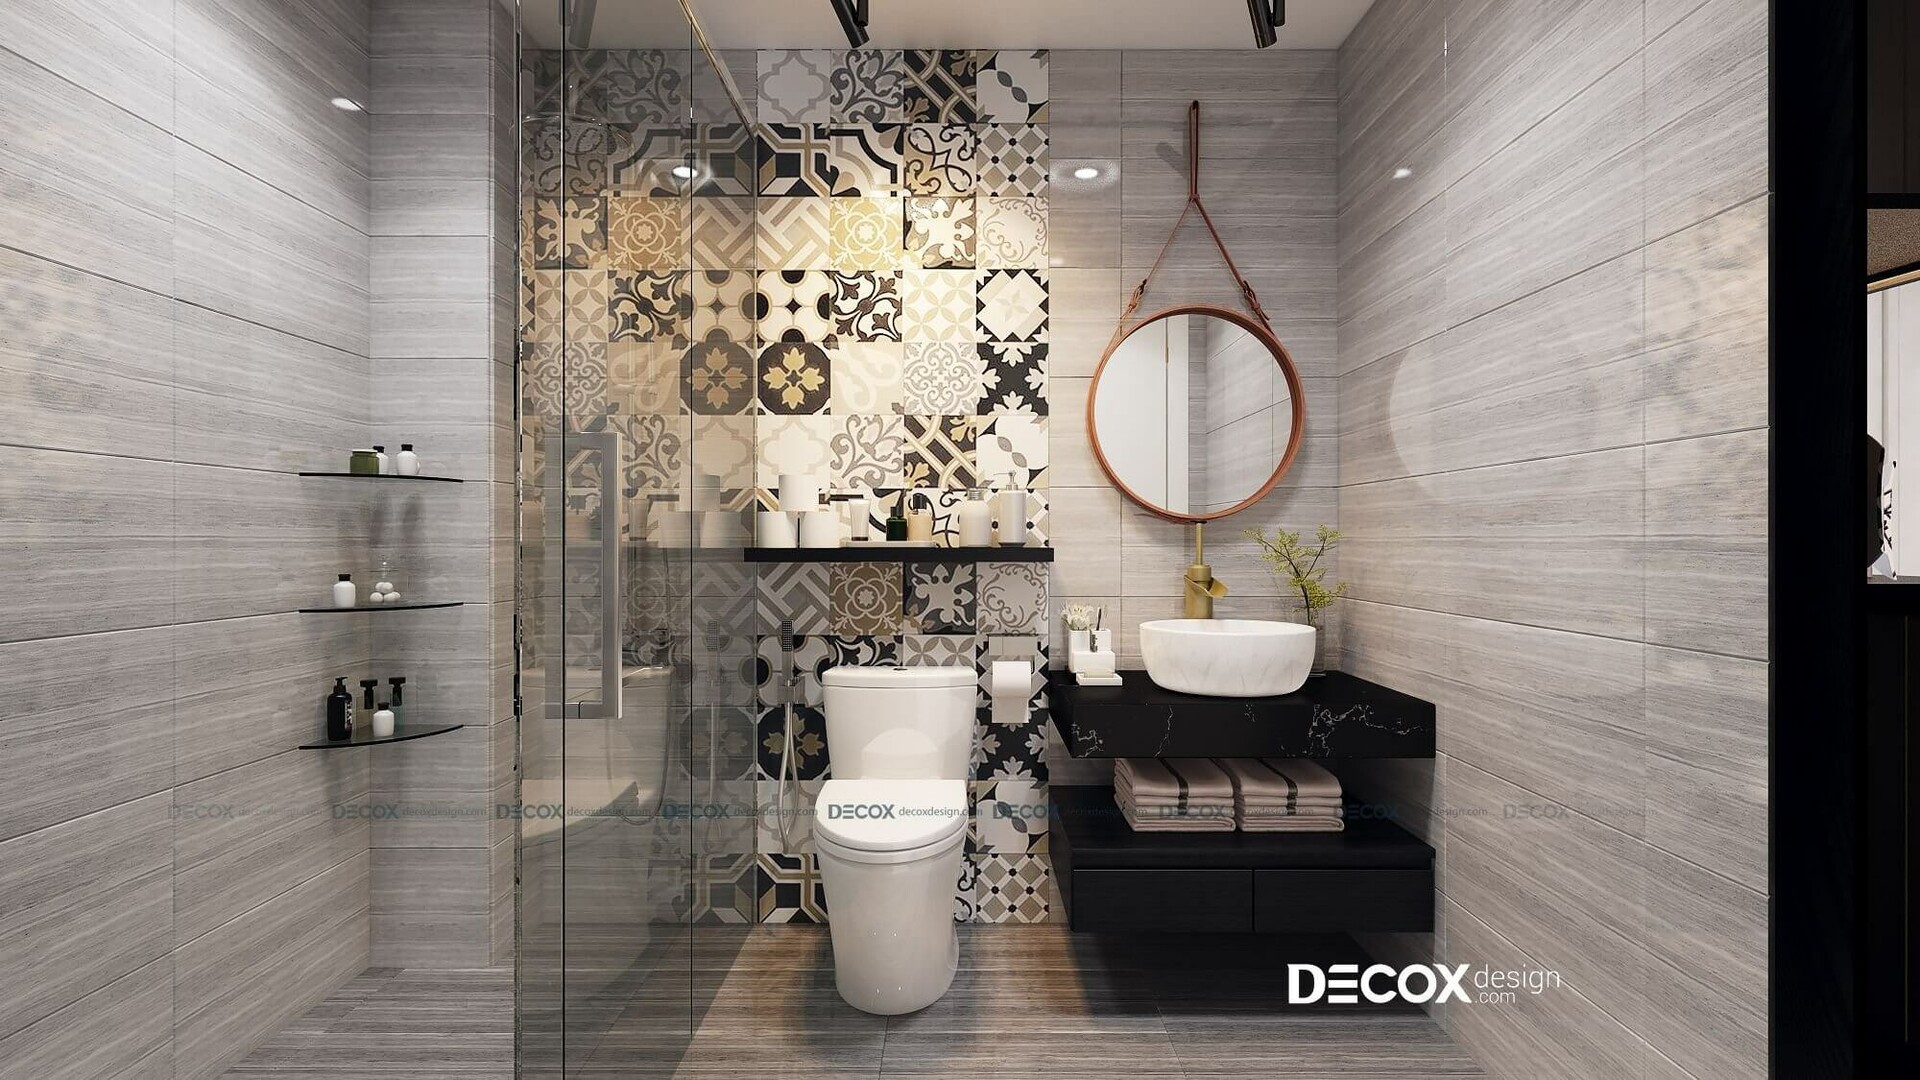 decoxdesign design - 99+ mẫu thiết kế nội thất phòng tắm đẹp xu ...